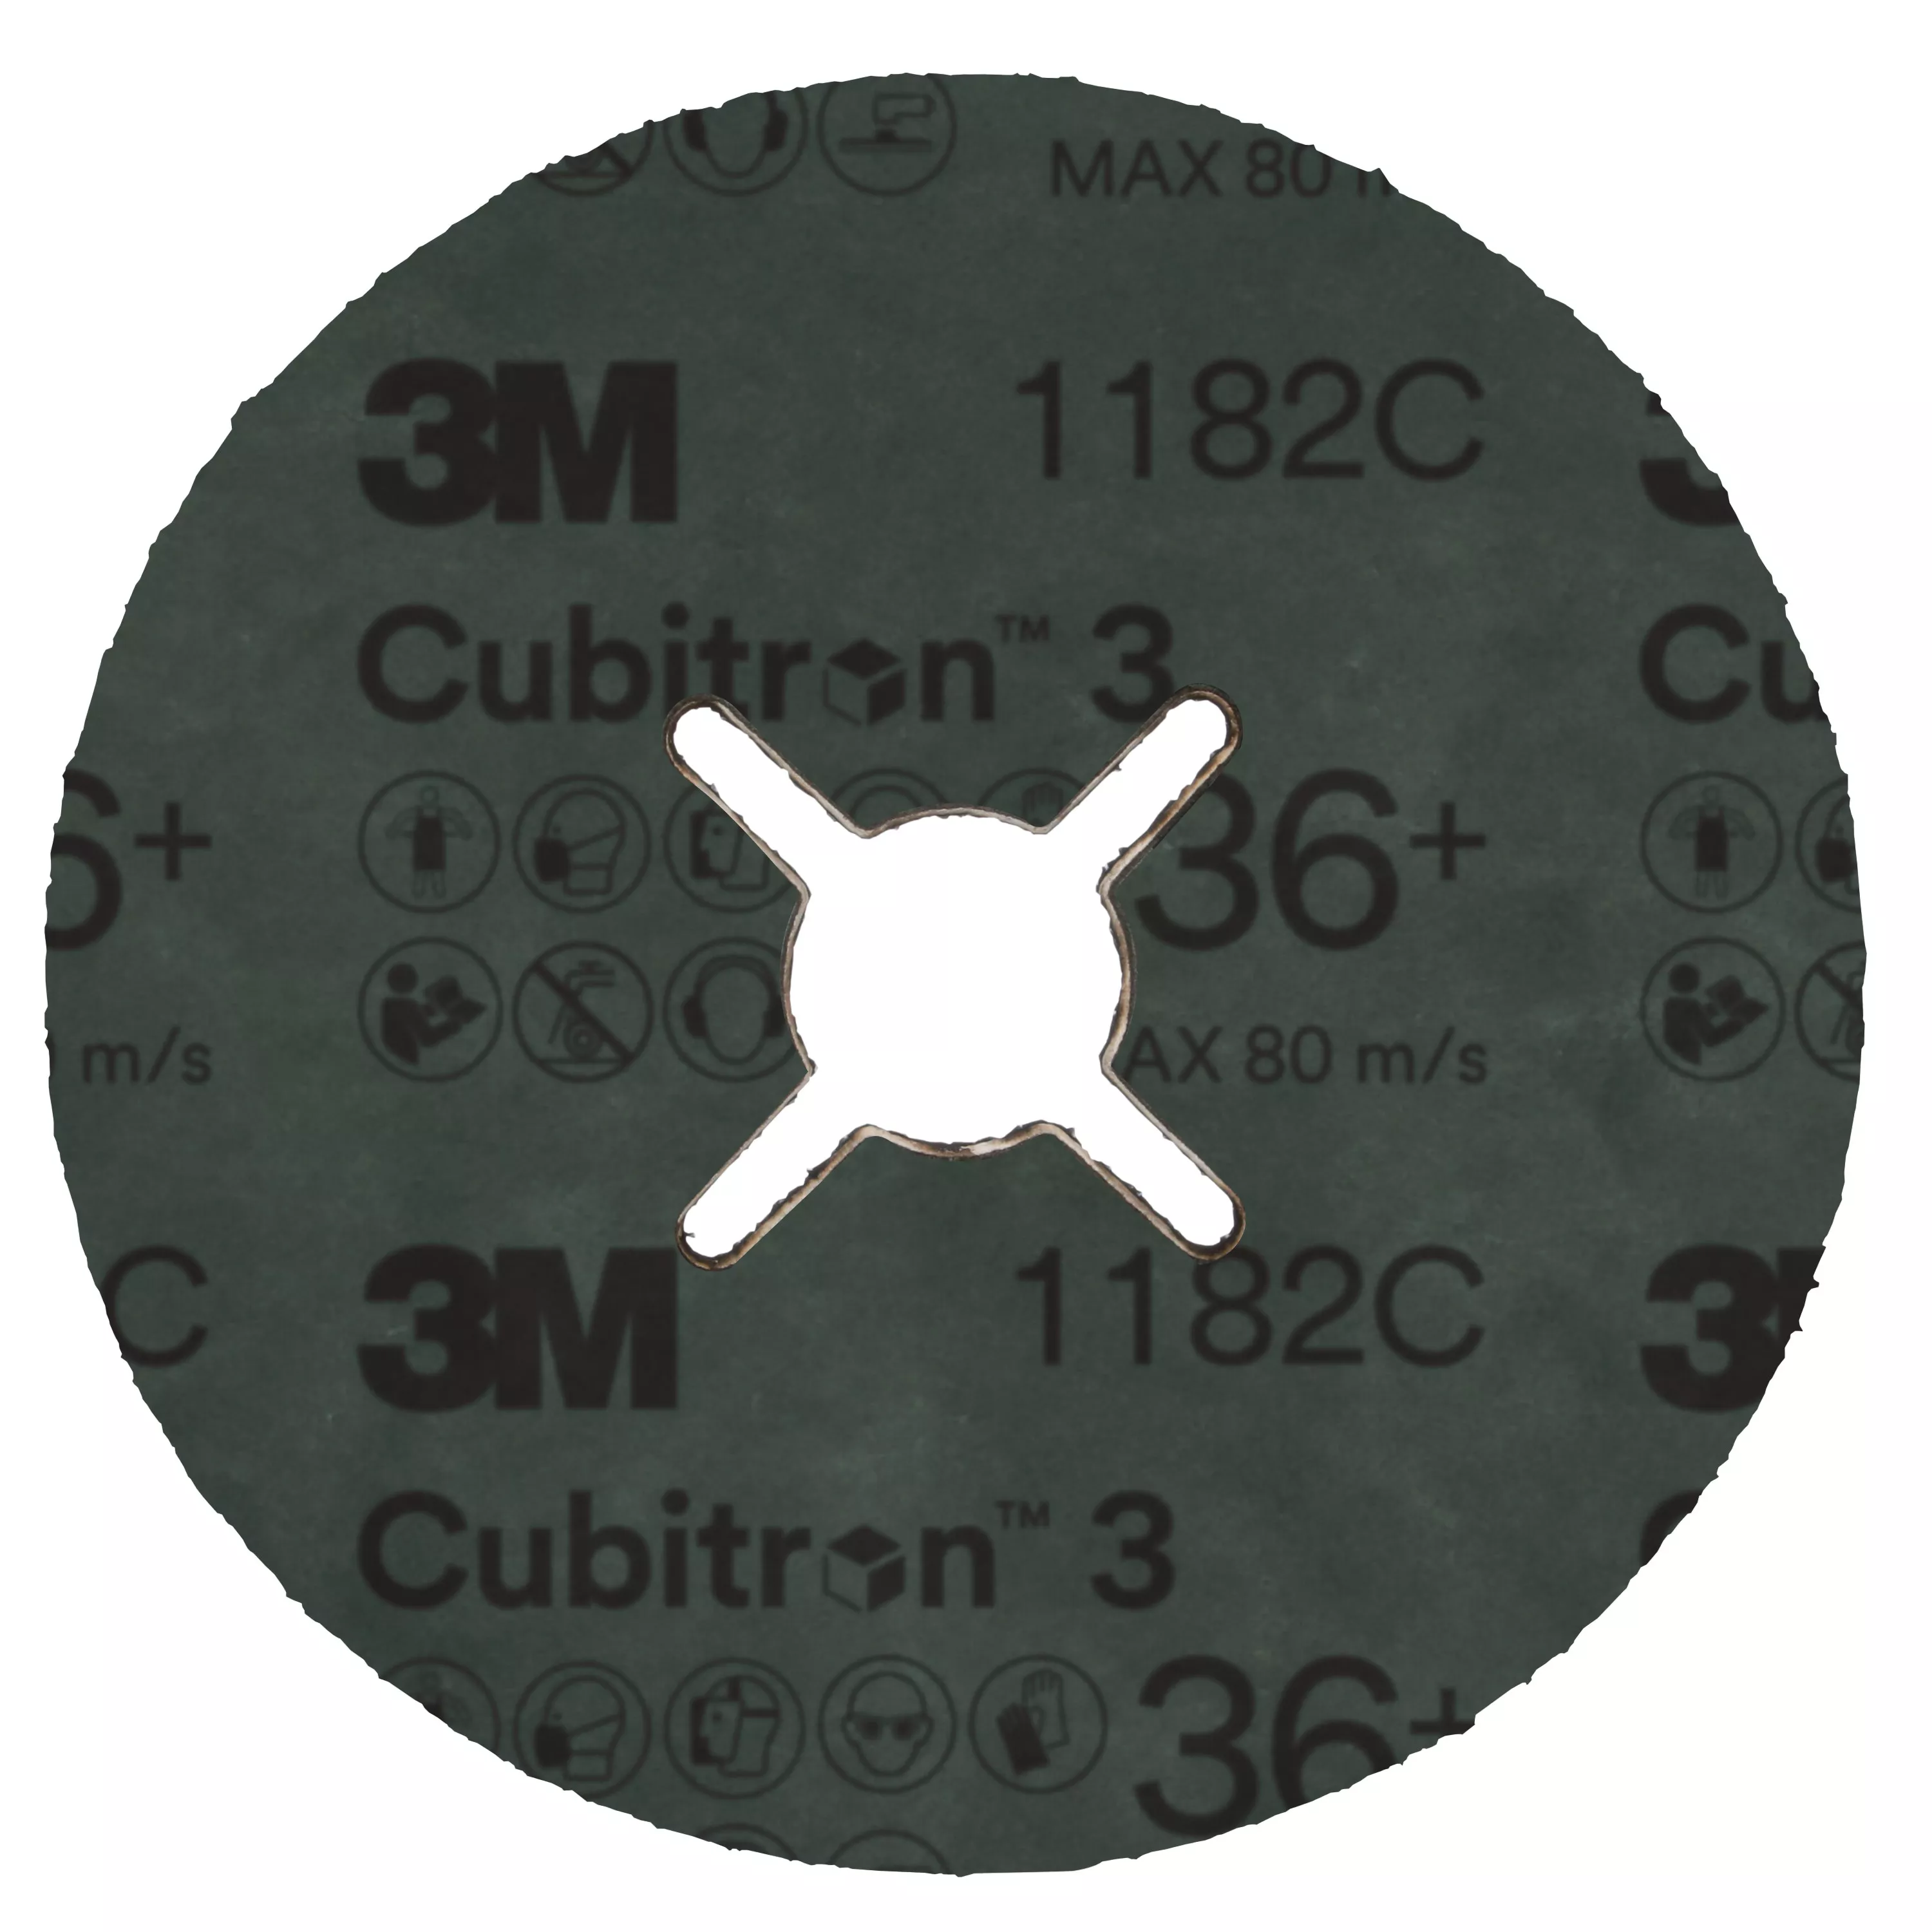 SKU 7100320166 | 3M™ Cubitron™ 3 Fibre Disc 1182C